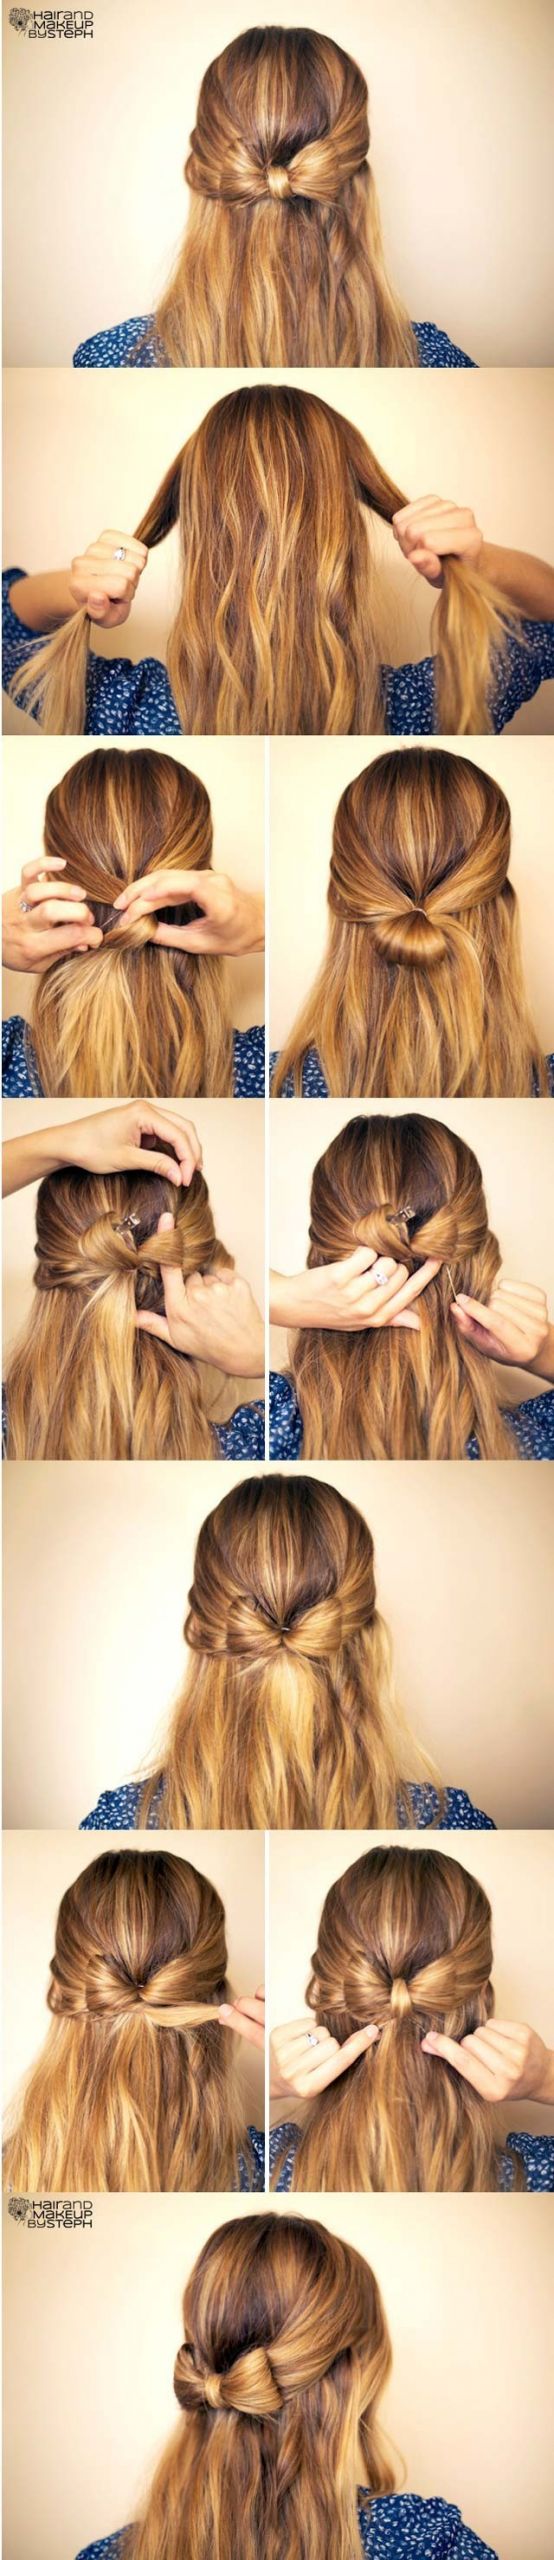 Cute Hairstyles Step By Step
 15 Cute hairstyles Step by Step Hairstyles for Long Hair